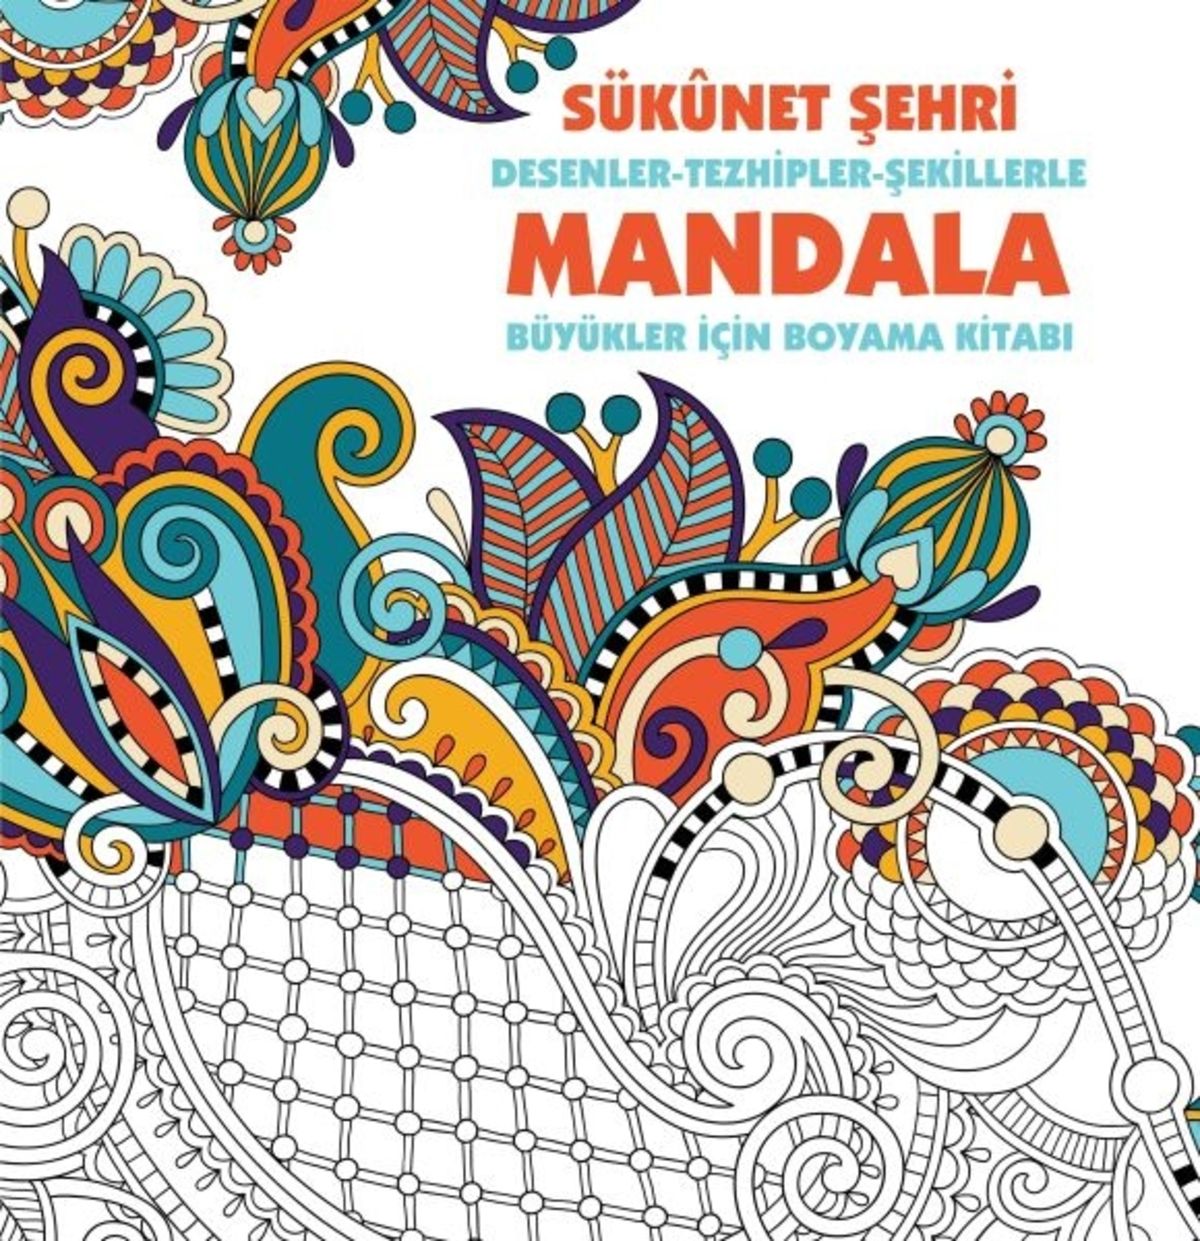 Genel Markalar Sükunet Şehri - Mandala (BÜYÜKLER IÇİN BOYAMA)